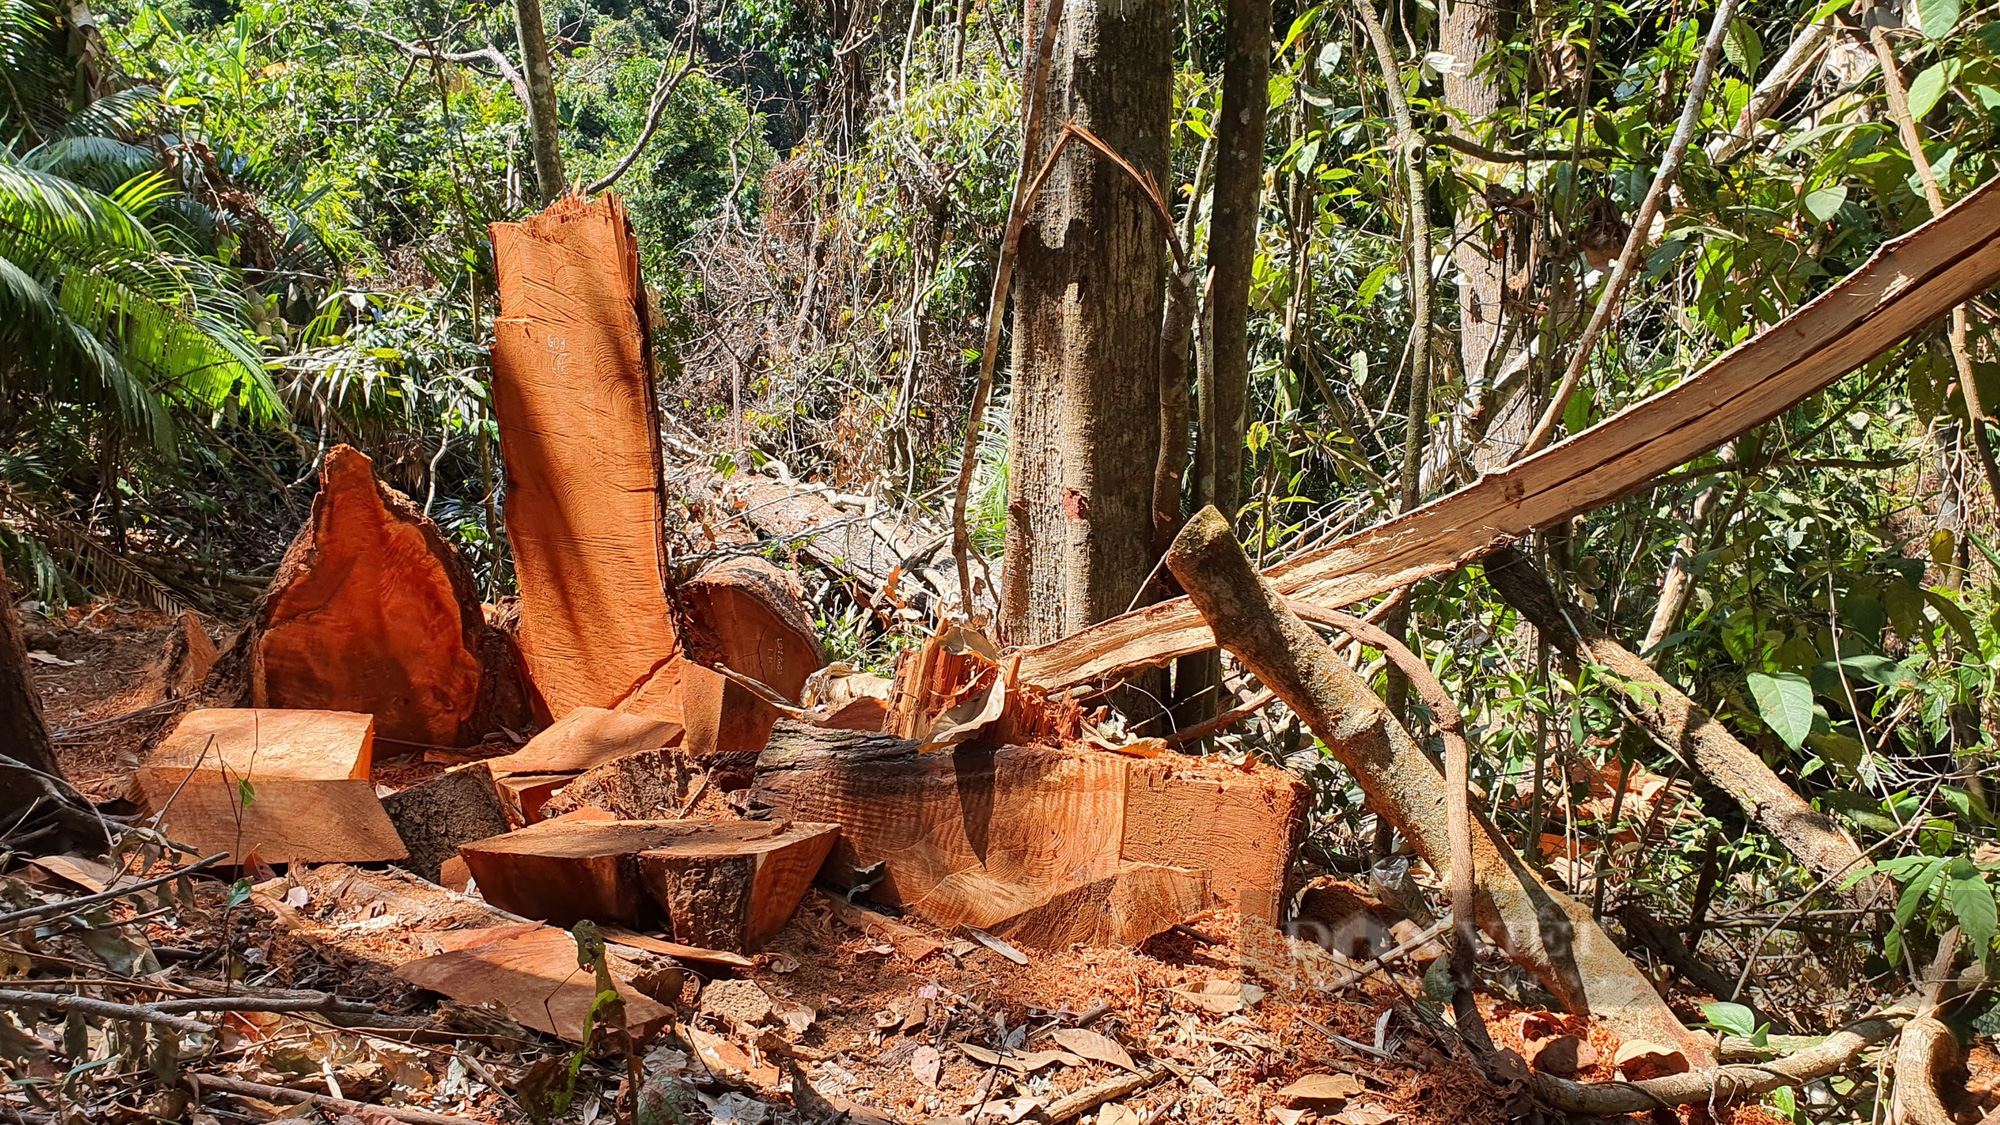 Vụ hàng chục cây gỗ cổ thụ bị cưa hạ tại Măng Đen: Xác định nhóm đối tượng liên quan - Ảnh 3.